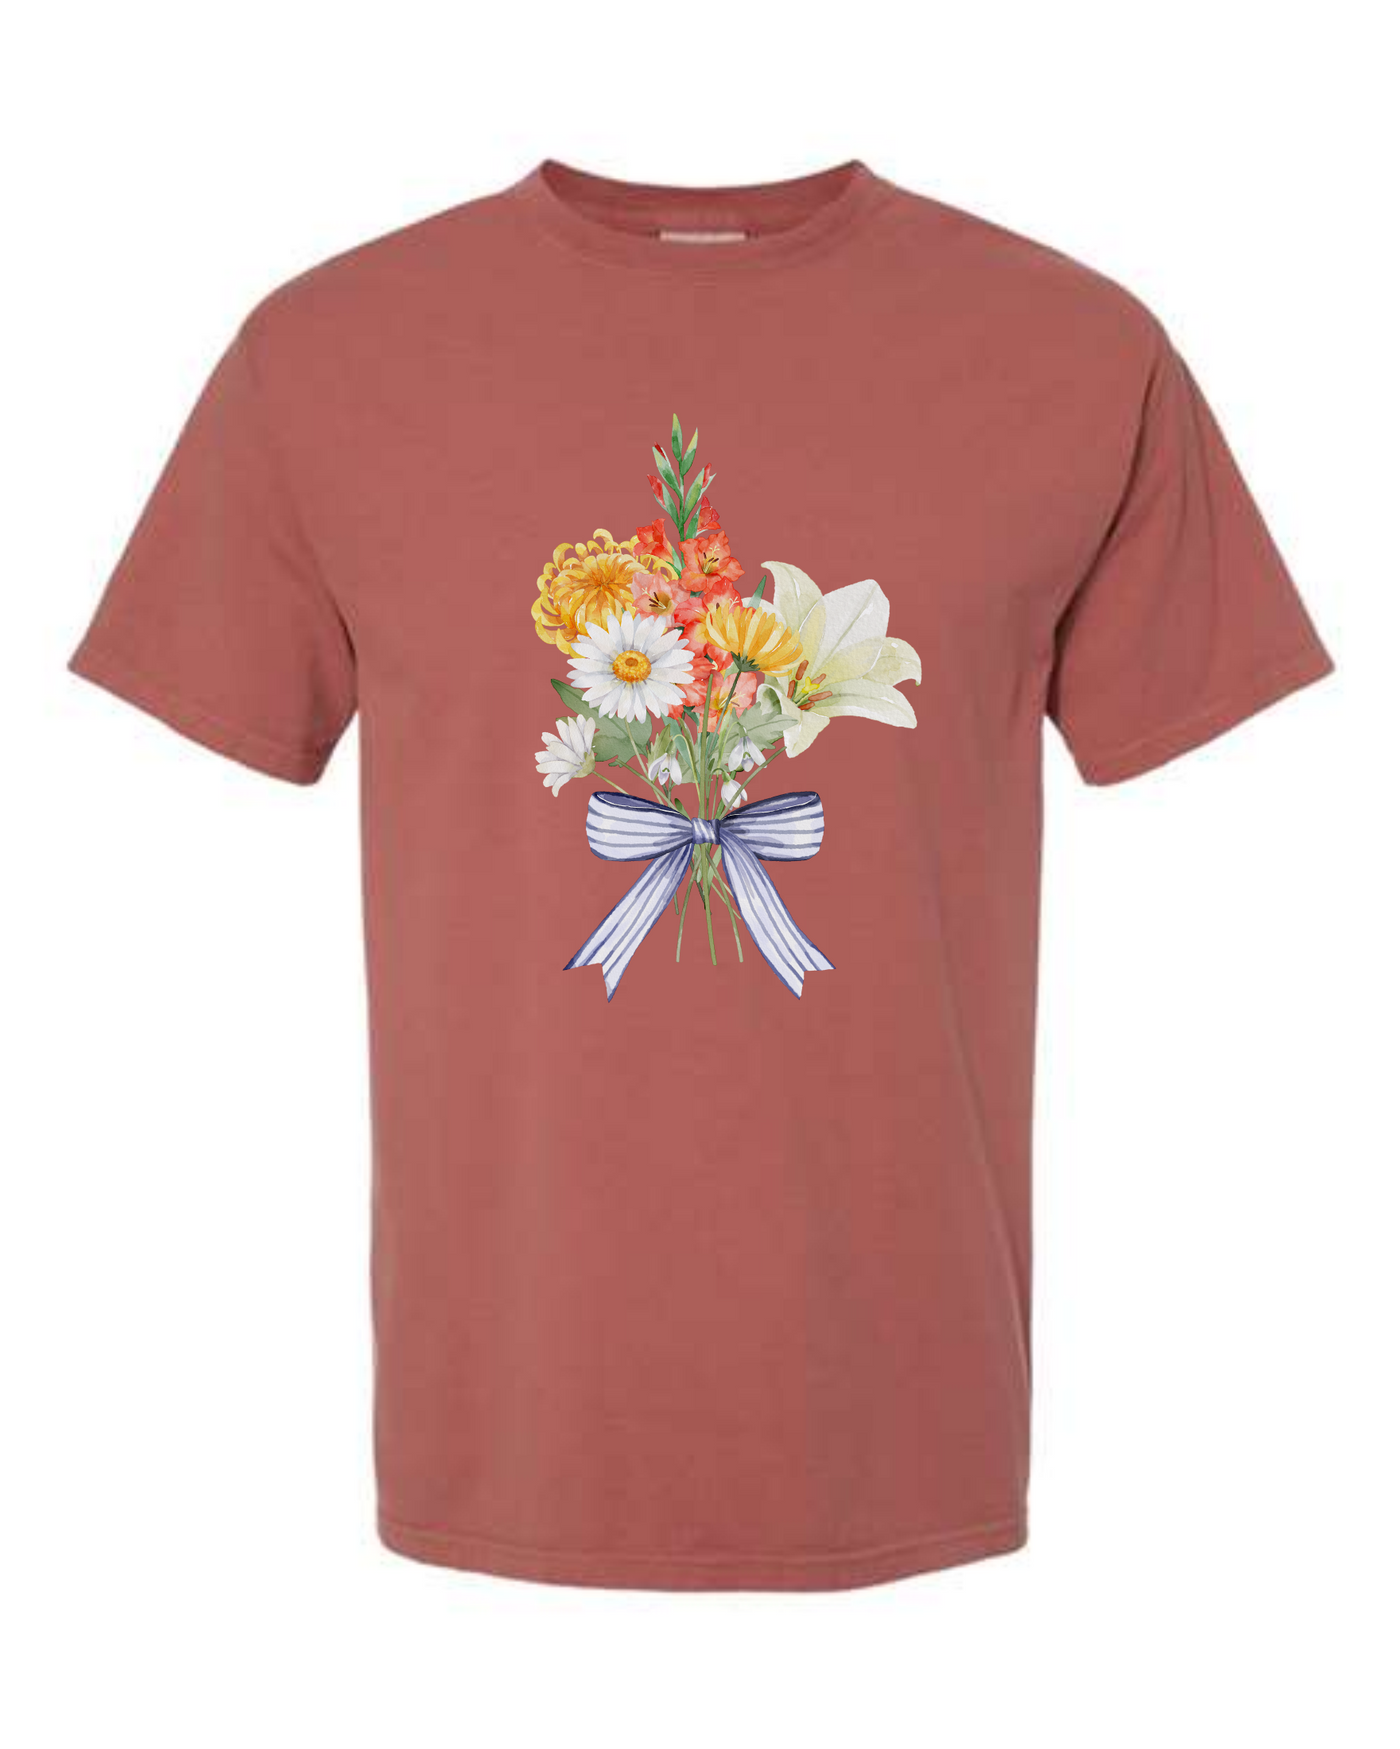 Flower Bouquet Short Sleeve T-shirt